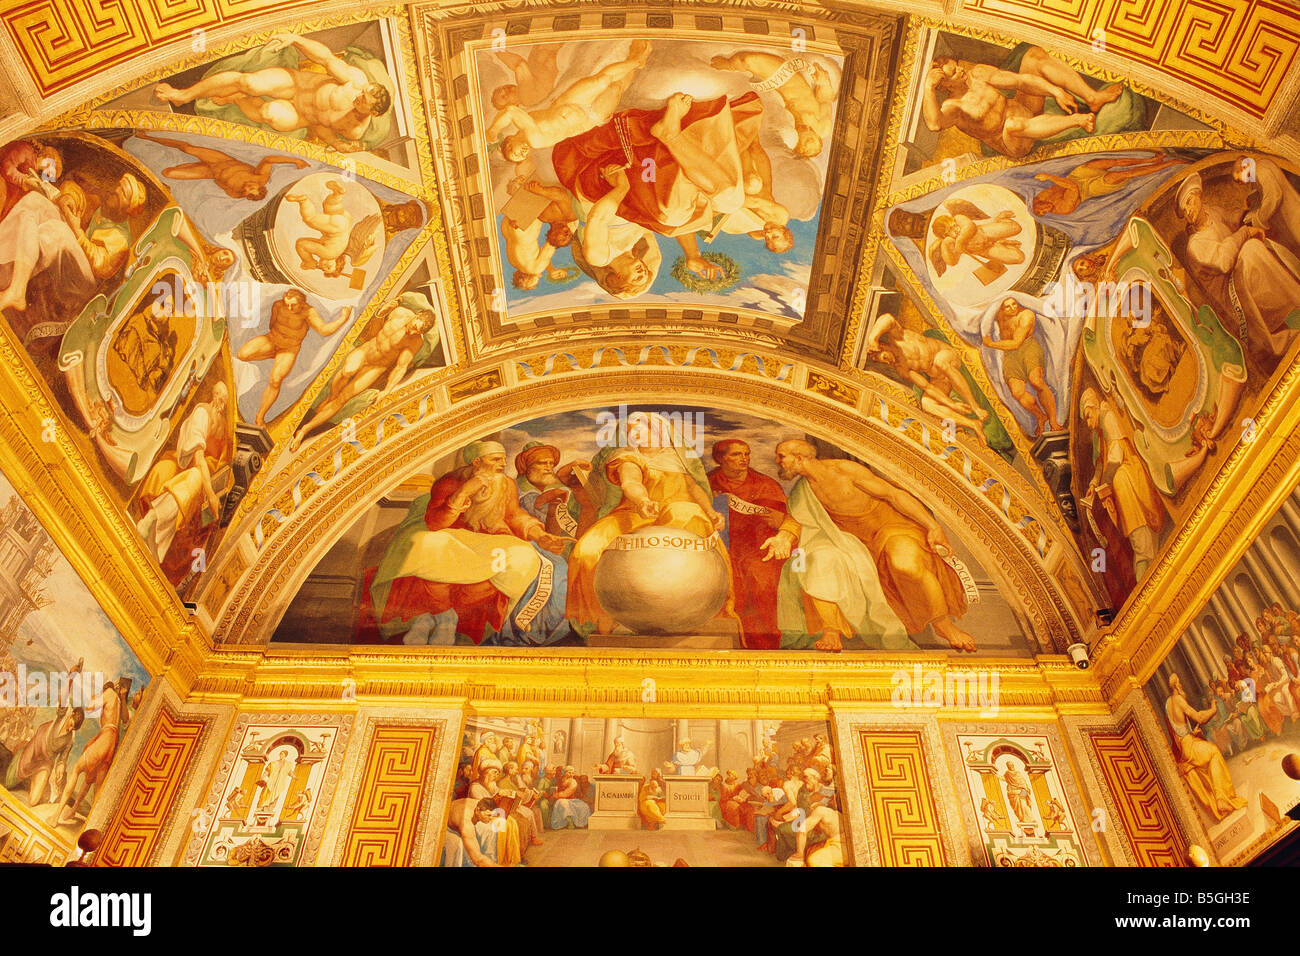 Spain - Madrid neighbourhood - El Escorial - Royal Monastery of San Lorenzo El Real - Library - frescoes -  the vaulted ceilings Stock Photo